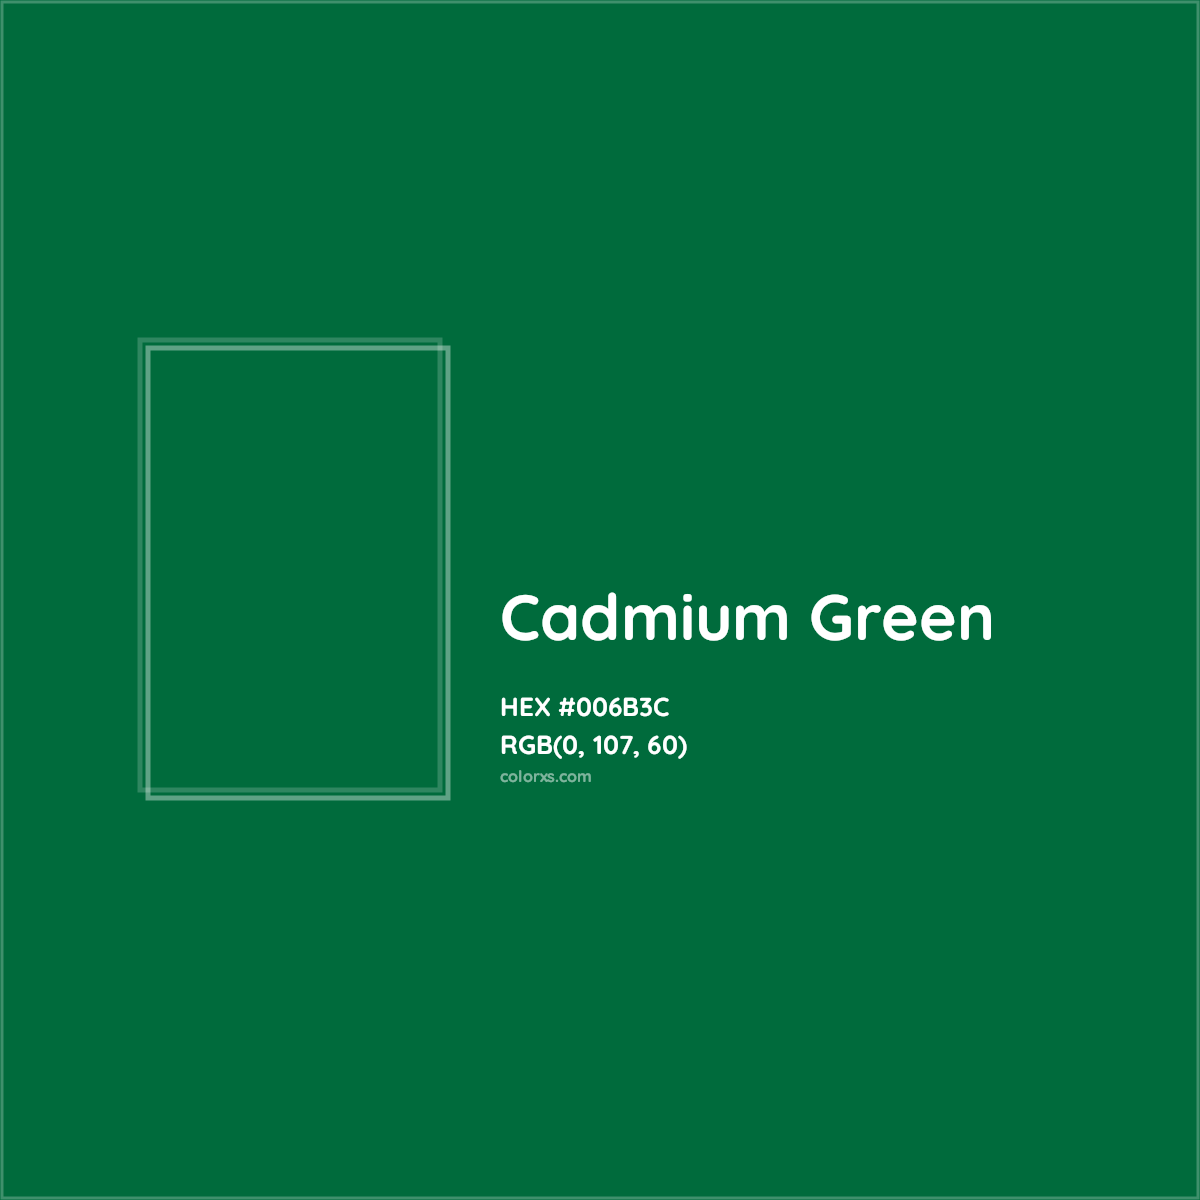 HEX #006B3C Cadmium Green Color - Color Code